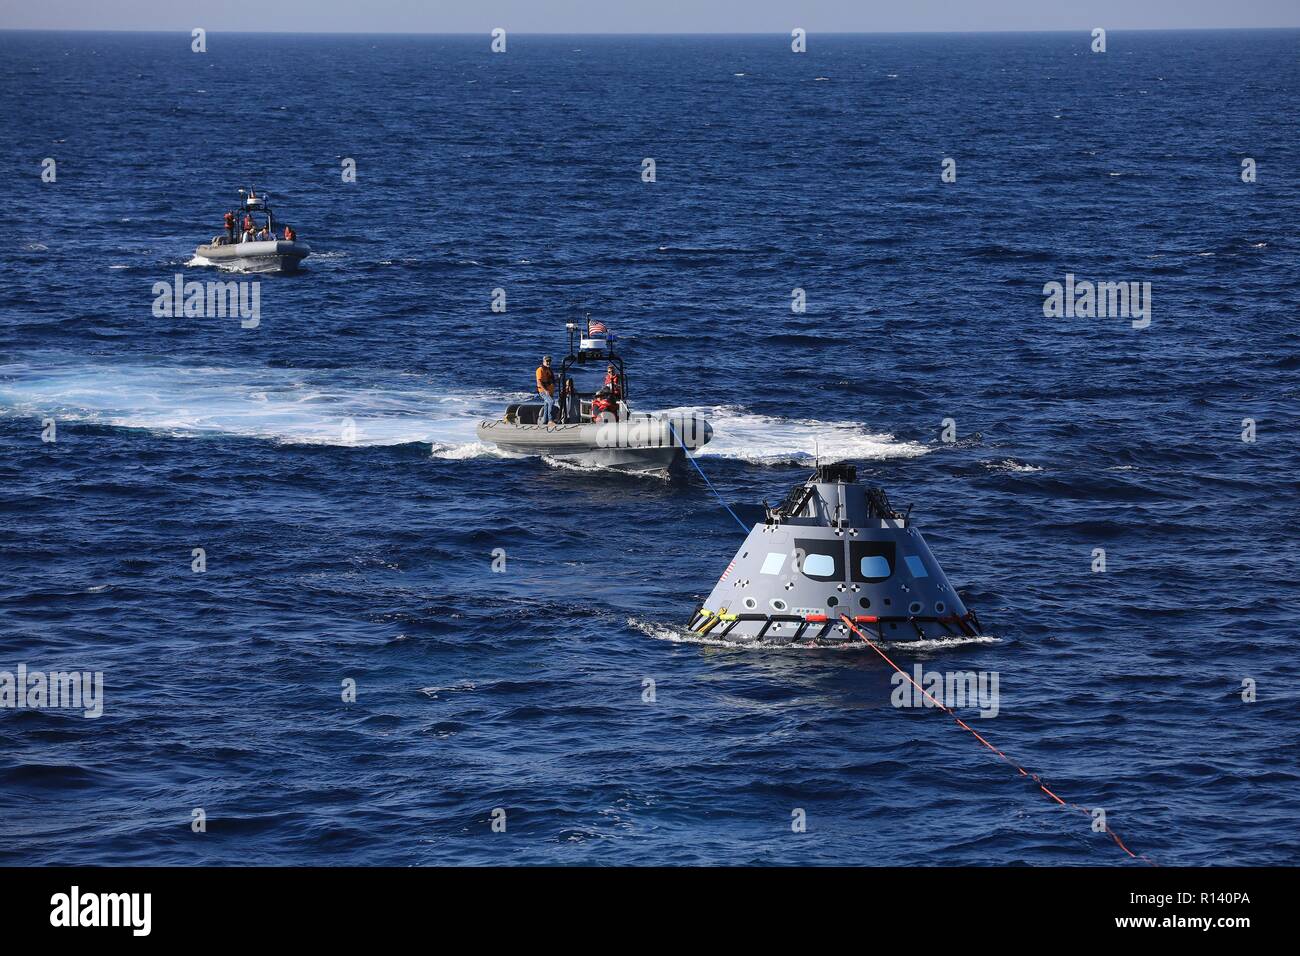 La NASA squadra di recupero e U.S. Navy divers trainare un mock up versione di Orion next generation space capsule per la USS John P. Murtha durante un oceano aperto prova di recupero 31 ottobre 2018 nell'Oceano Pacifico. La NASA e gli Stati Uniti La marina non ha eseguito oceano aperto il recupero di un manned space capsule poiché il progetto Apollo negli anni sessanta e sono le procedure di test e la bulloneria che verranno utilizzate per recuperare il veicolo spaziale Orion dopo che schizza verso il basso nell'Oceano Pacifico seguendo il futuro dello spazio profondo missioni di esplorazione. Foto Stock